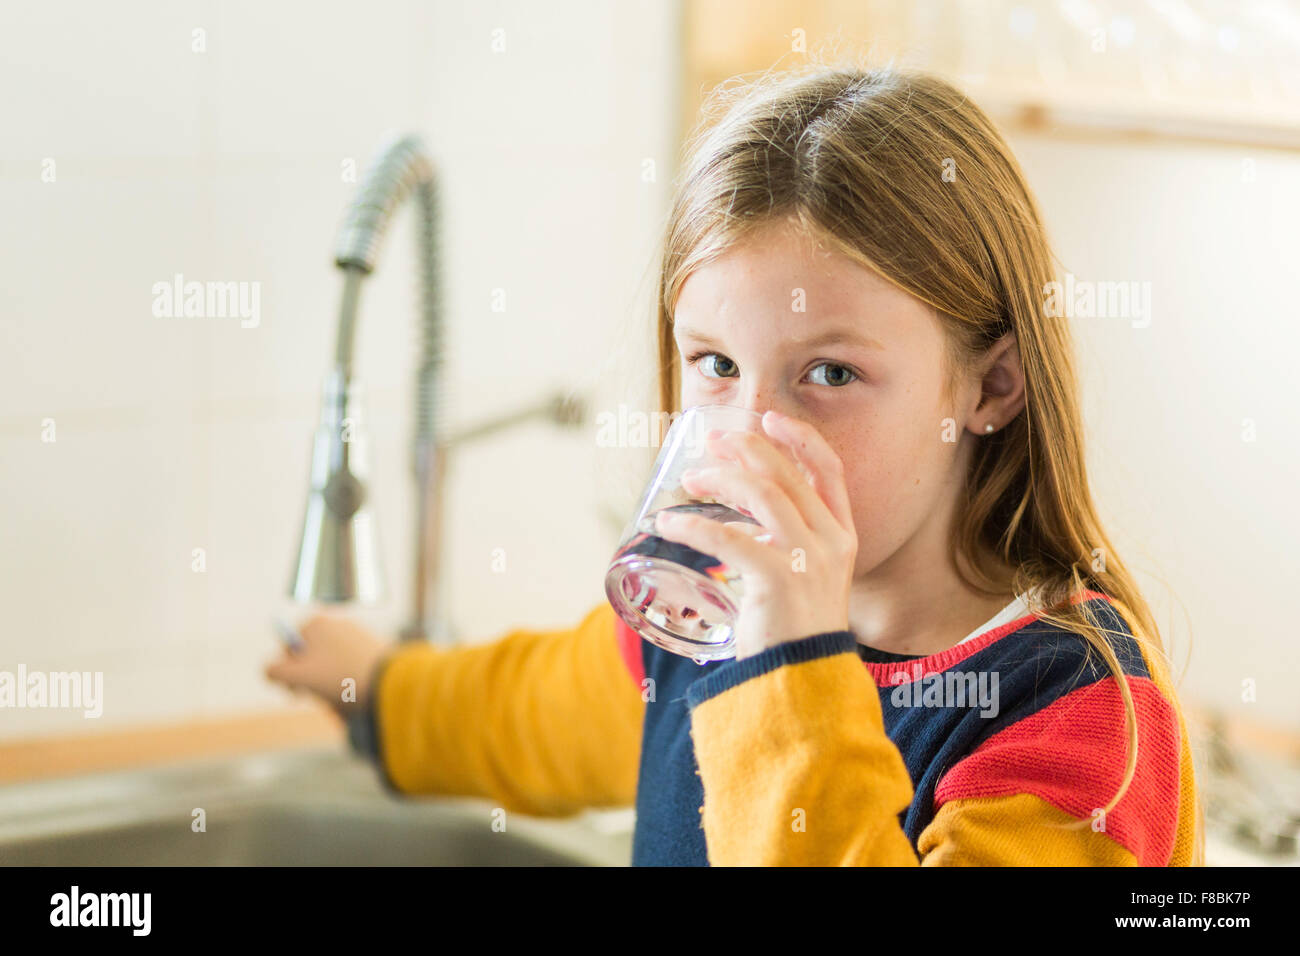 9-anno-vecchia ragazza di bere acqua del rubinetto. Foto Stock